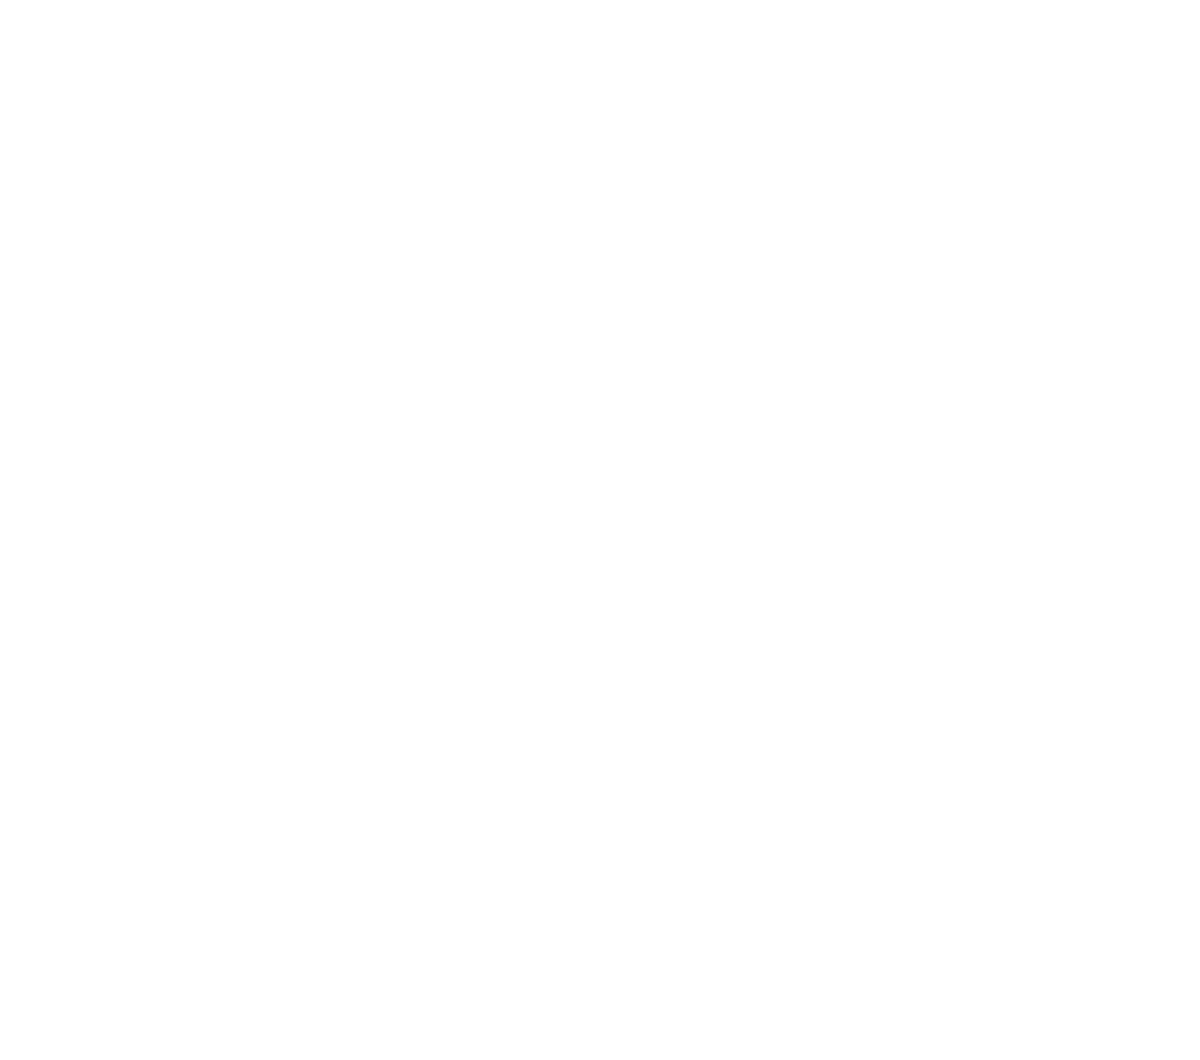 villagepeddler logo white